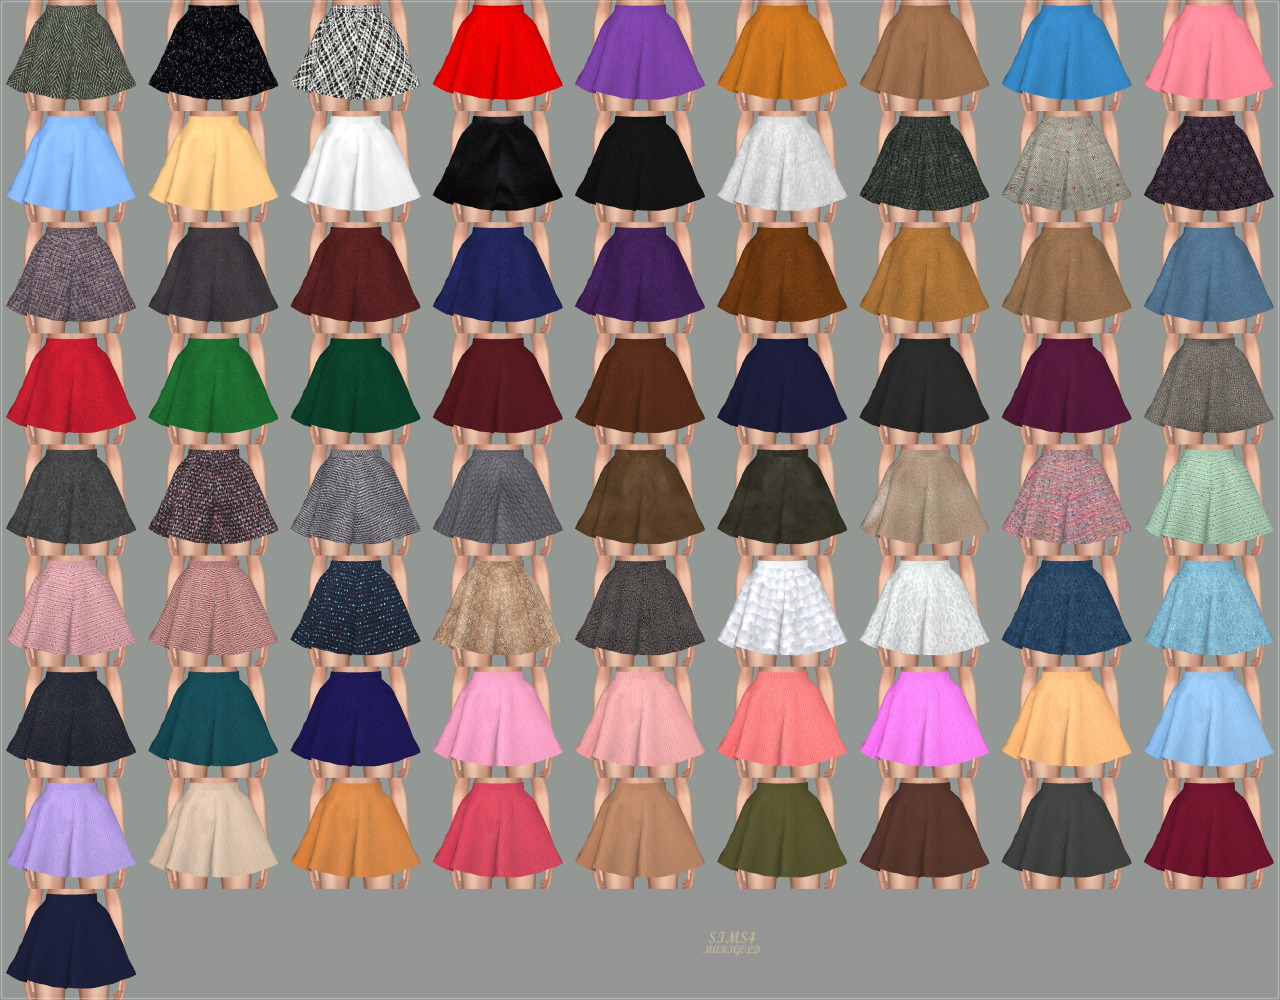 The Sims 4 Skirt CC